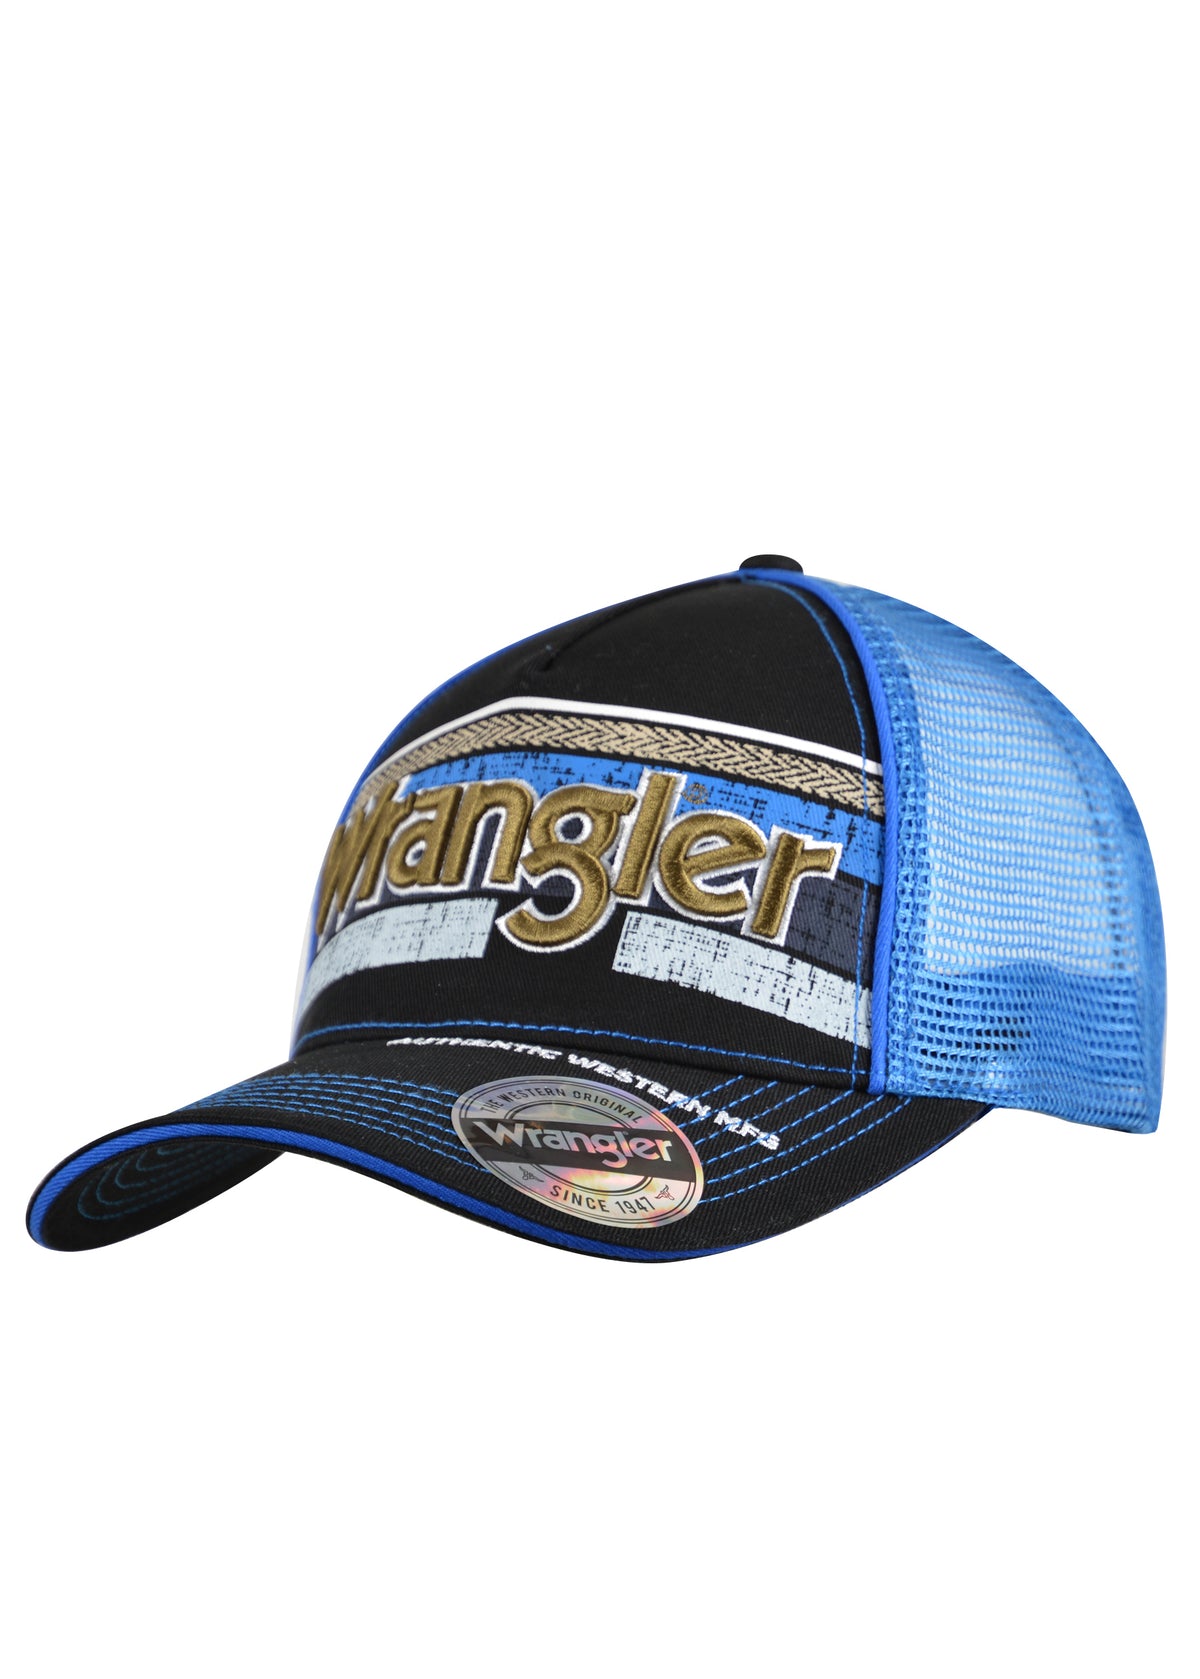 Wrangler Ryan Trucker Cap - Black